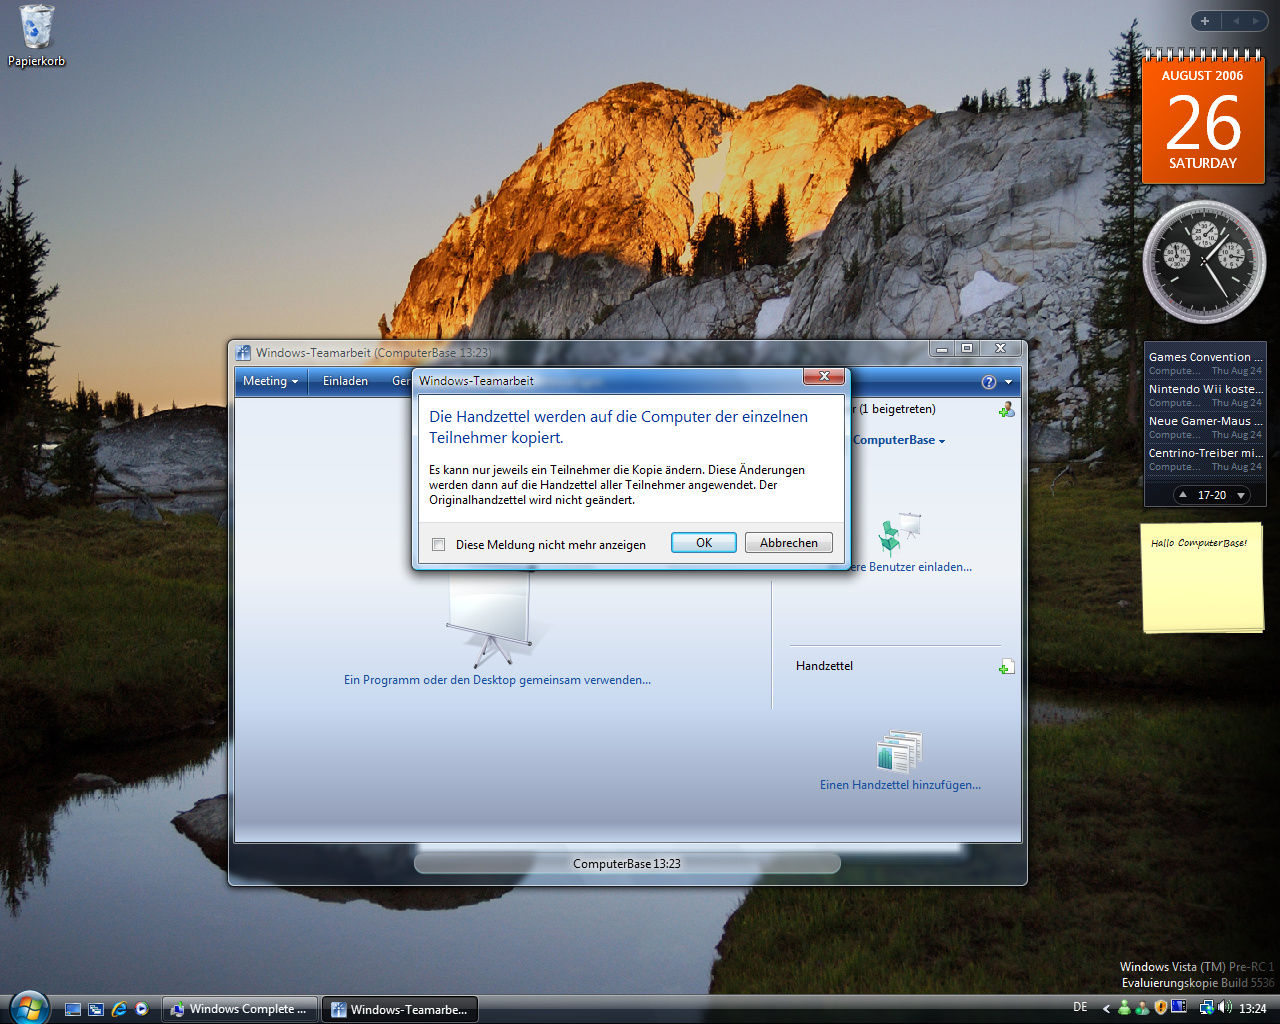 Windows Vista Build 5536 - Teamarbeit 3